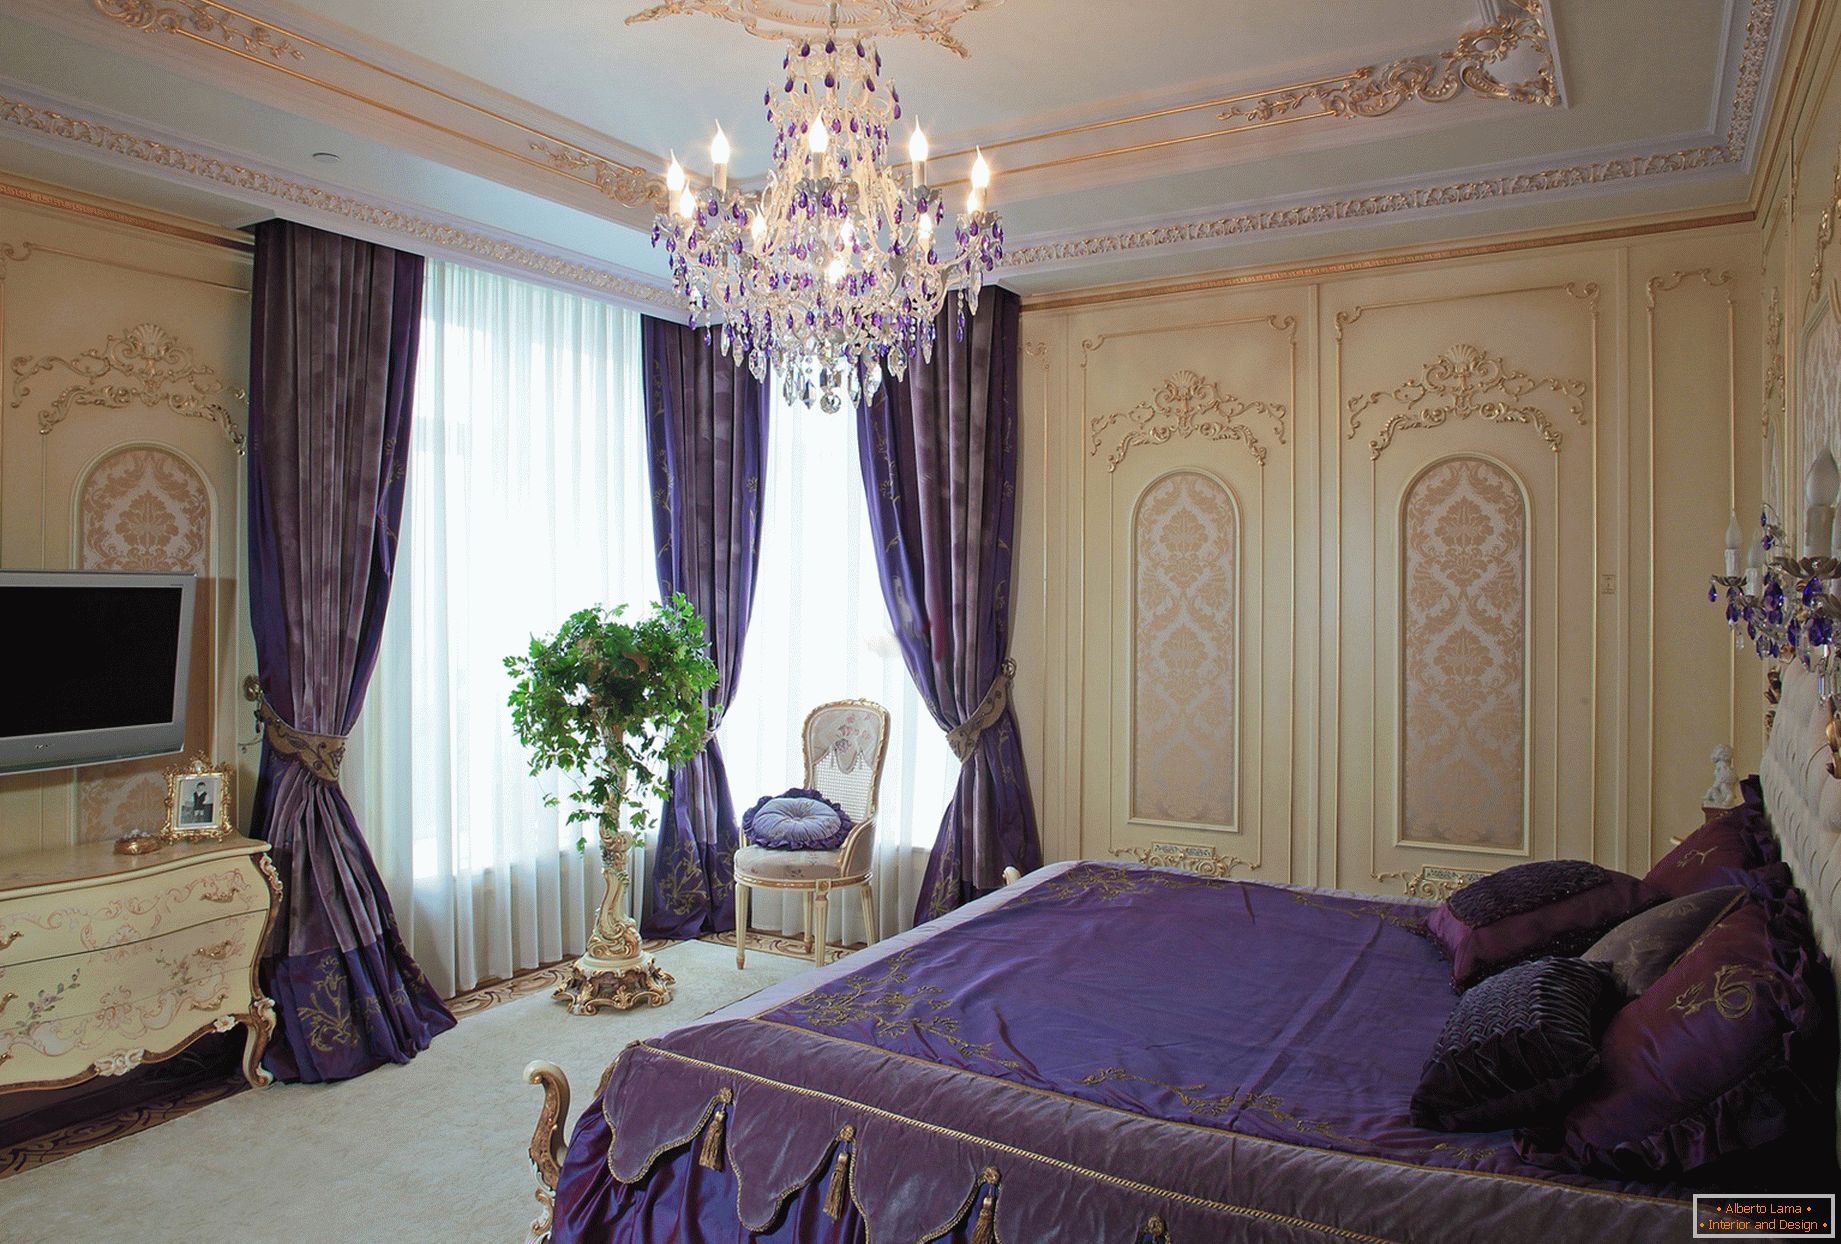 Elegantna spavaća soba u baroknom stilu. Suptilni koncept dizajna - tamne ljubičaste zavjese se kombiniraju s posteljinom u skladu ton.